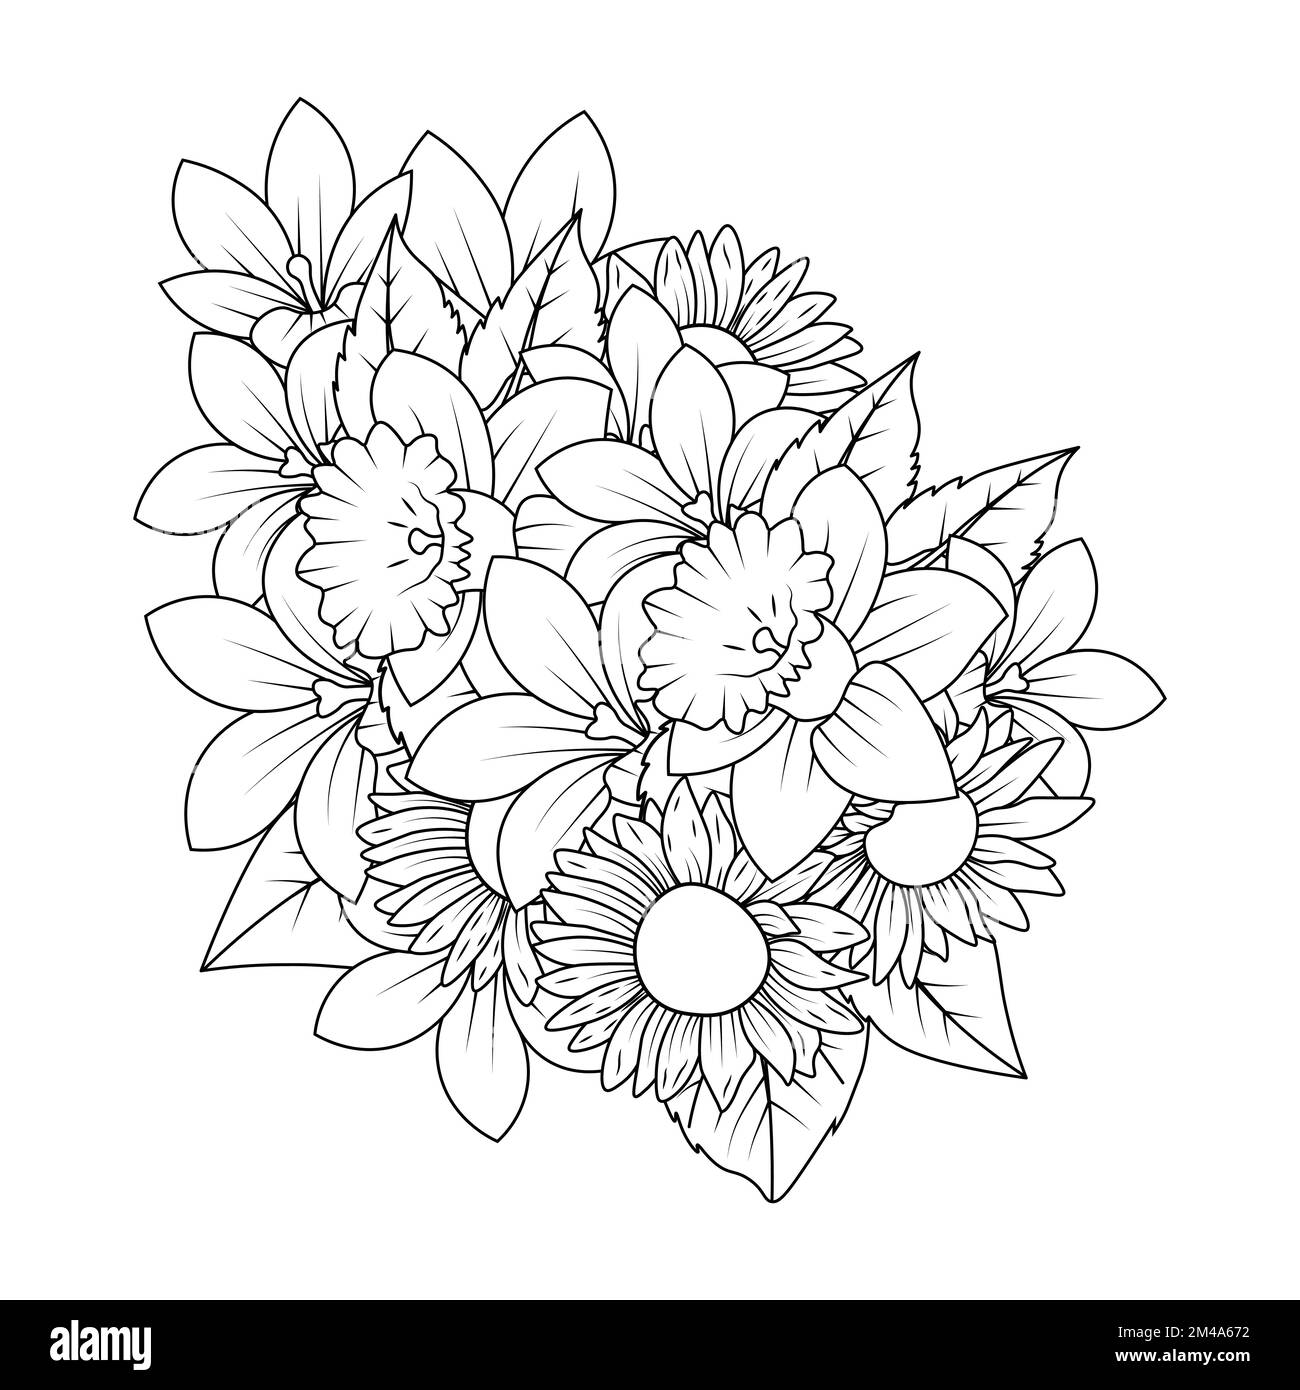 Sonnenblumen-Doodle-Art-Vektordesign mit Strichgrafiken-Malseite und einfachem Zeichnen mit Bleistift Stock Vektor